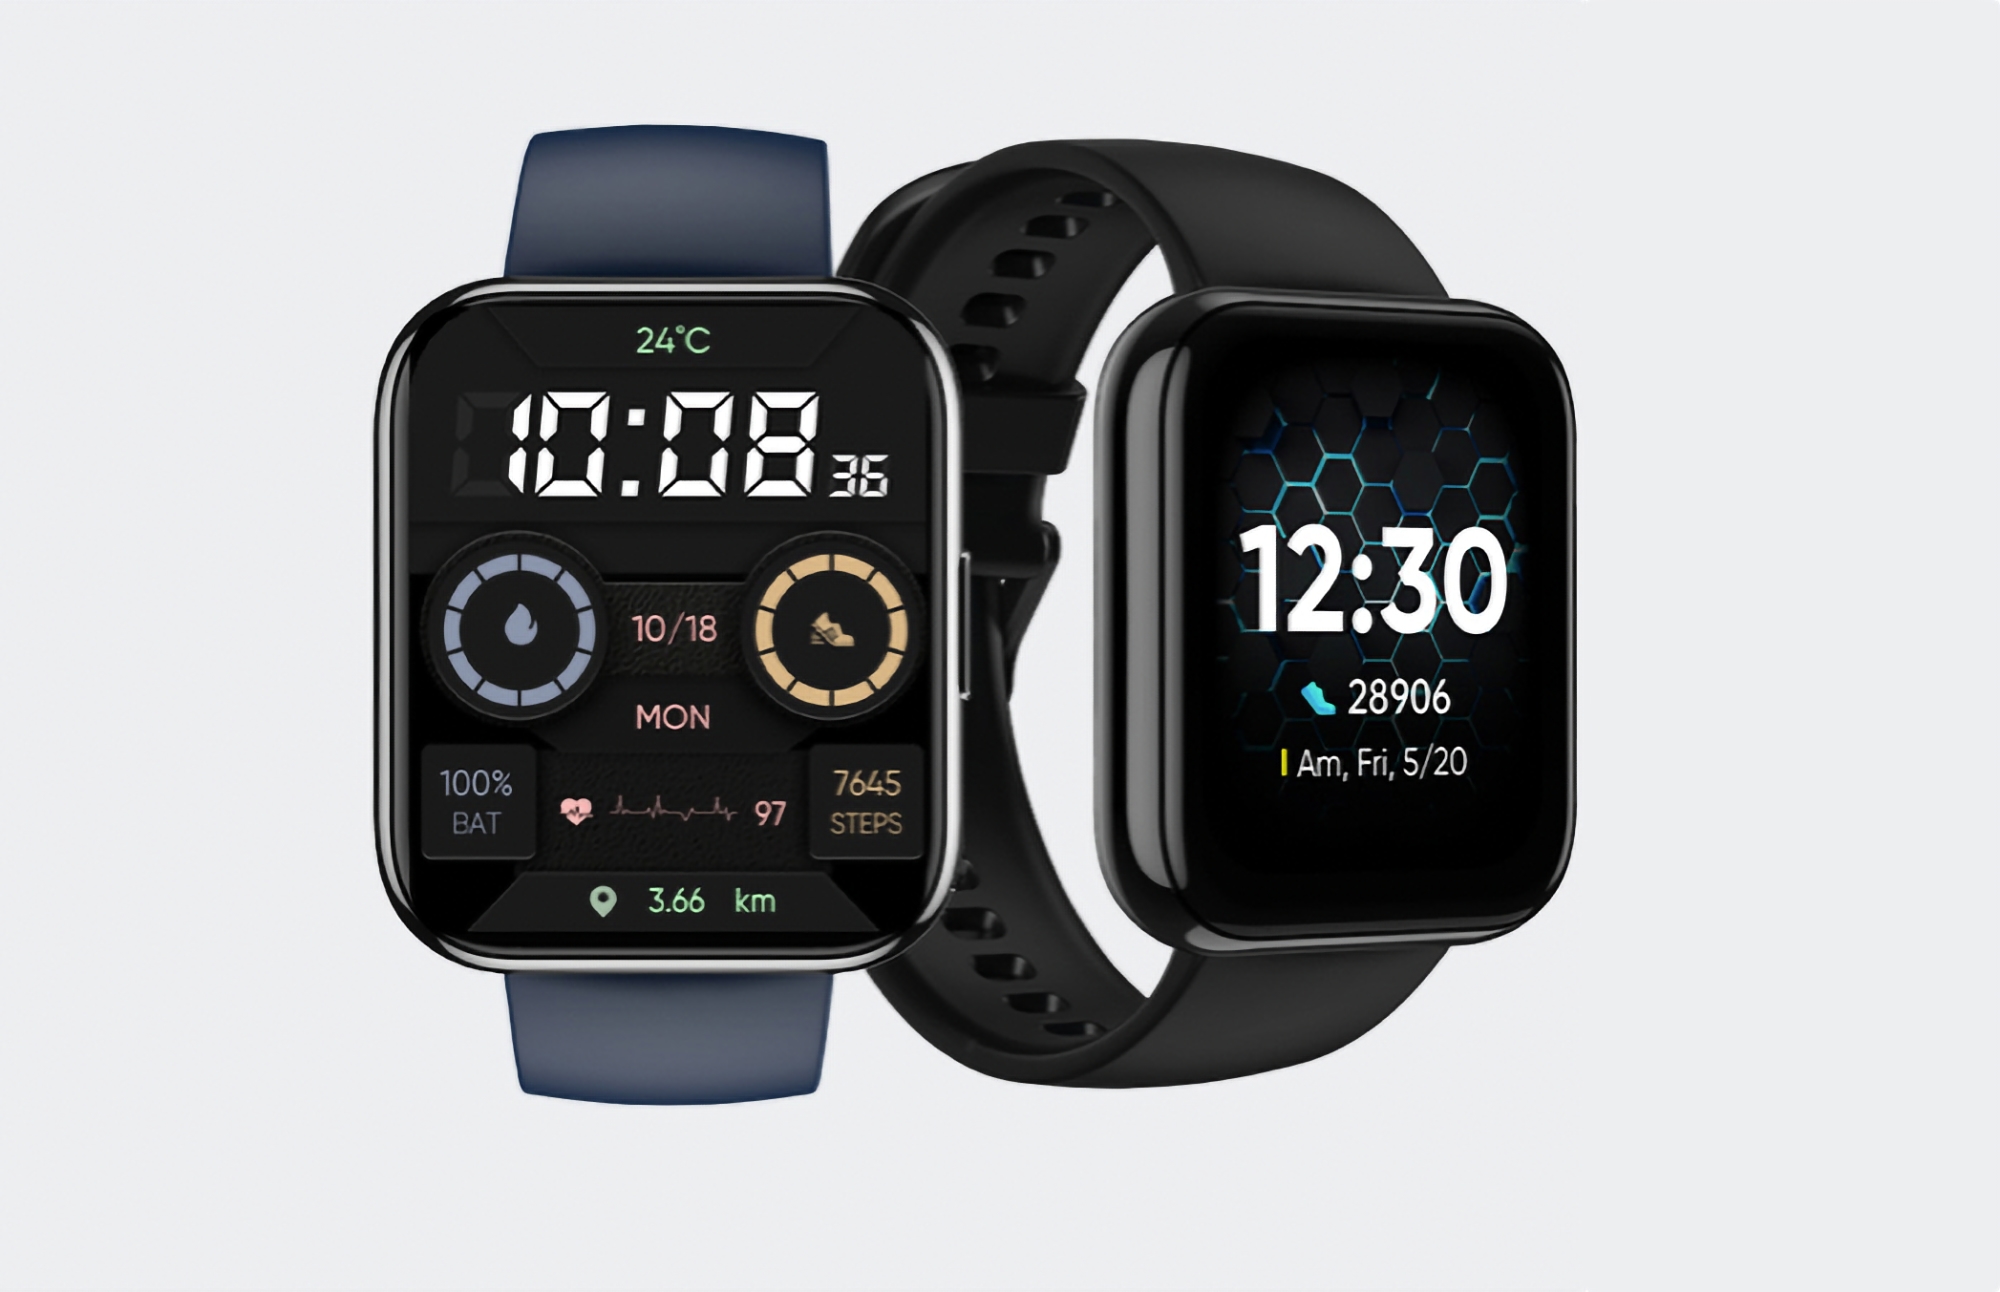 Verkaufsstart von DIZO Watch Pro auf AliExpress: eine Smartwatch aus dem Realme-Ökosystem mit 1,75-Zoll-Bildschirm, IP68-Schutz, SpO2-Sensor und Autonomie von bis zu 14 Tagen